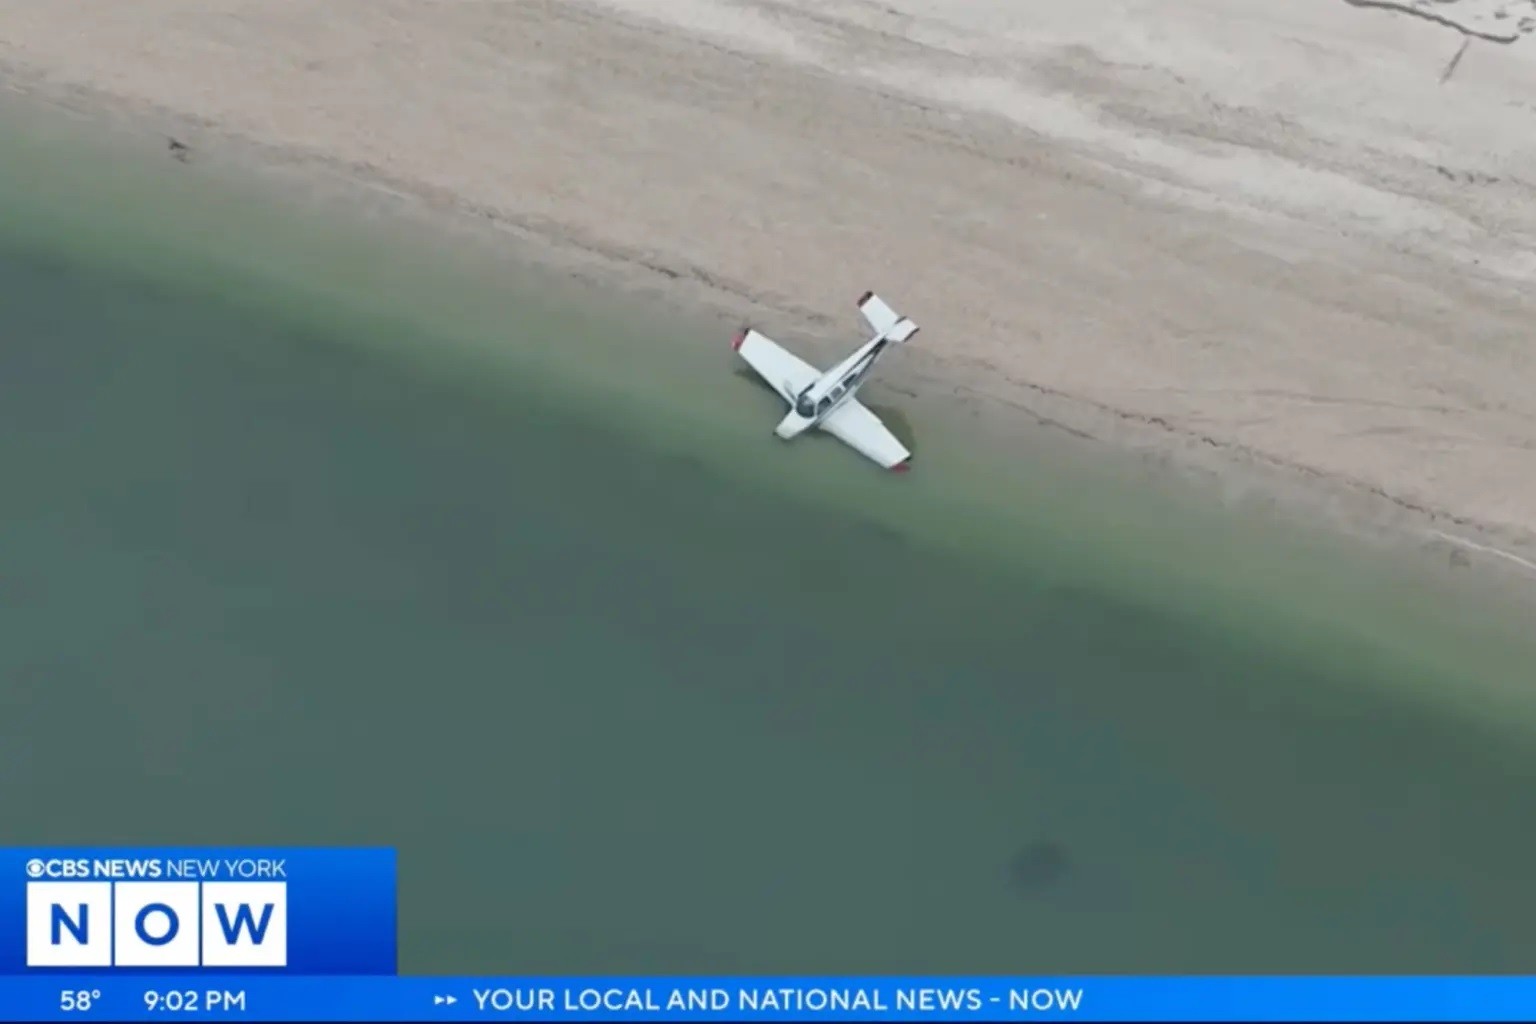 Đời sống - Kinh hoàng khoảnh khắc máy bay rơi xuống bãi biển do gặp sự cố động cơ